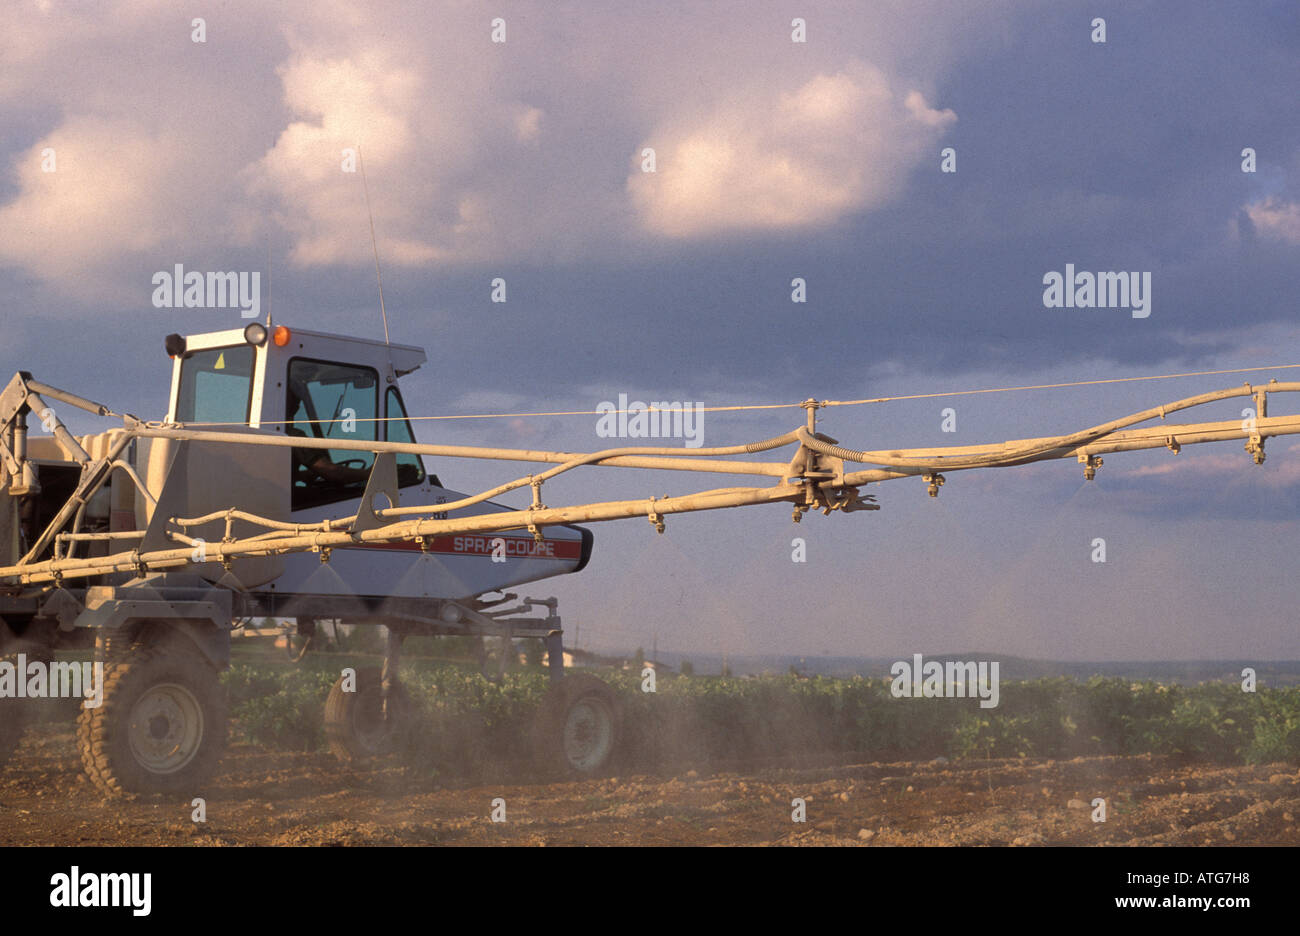 Stock Image del tractor con las alas fertilización de campo de patatas en Nueva Brunswick, Canadá Foto de stock